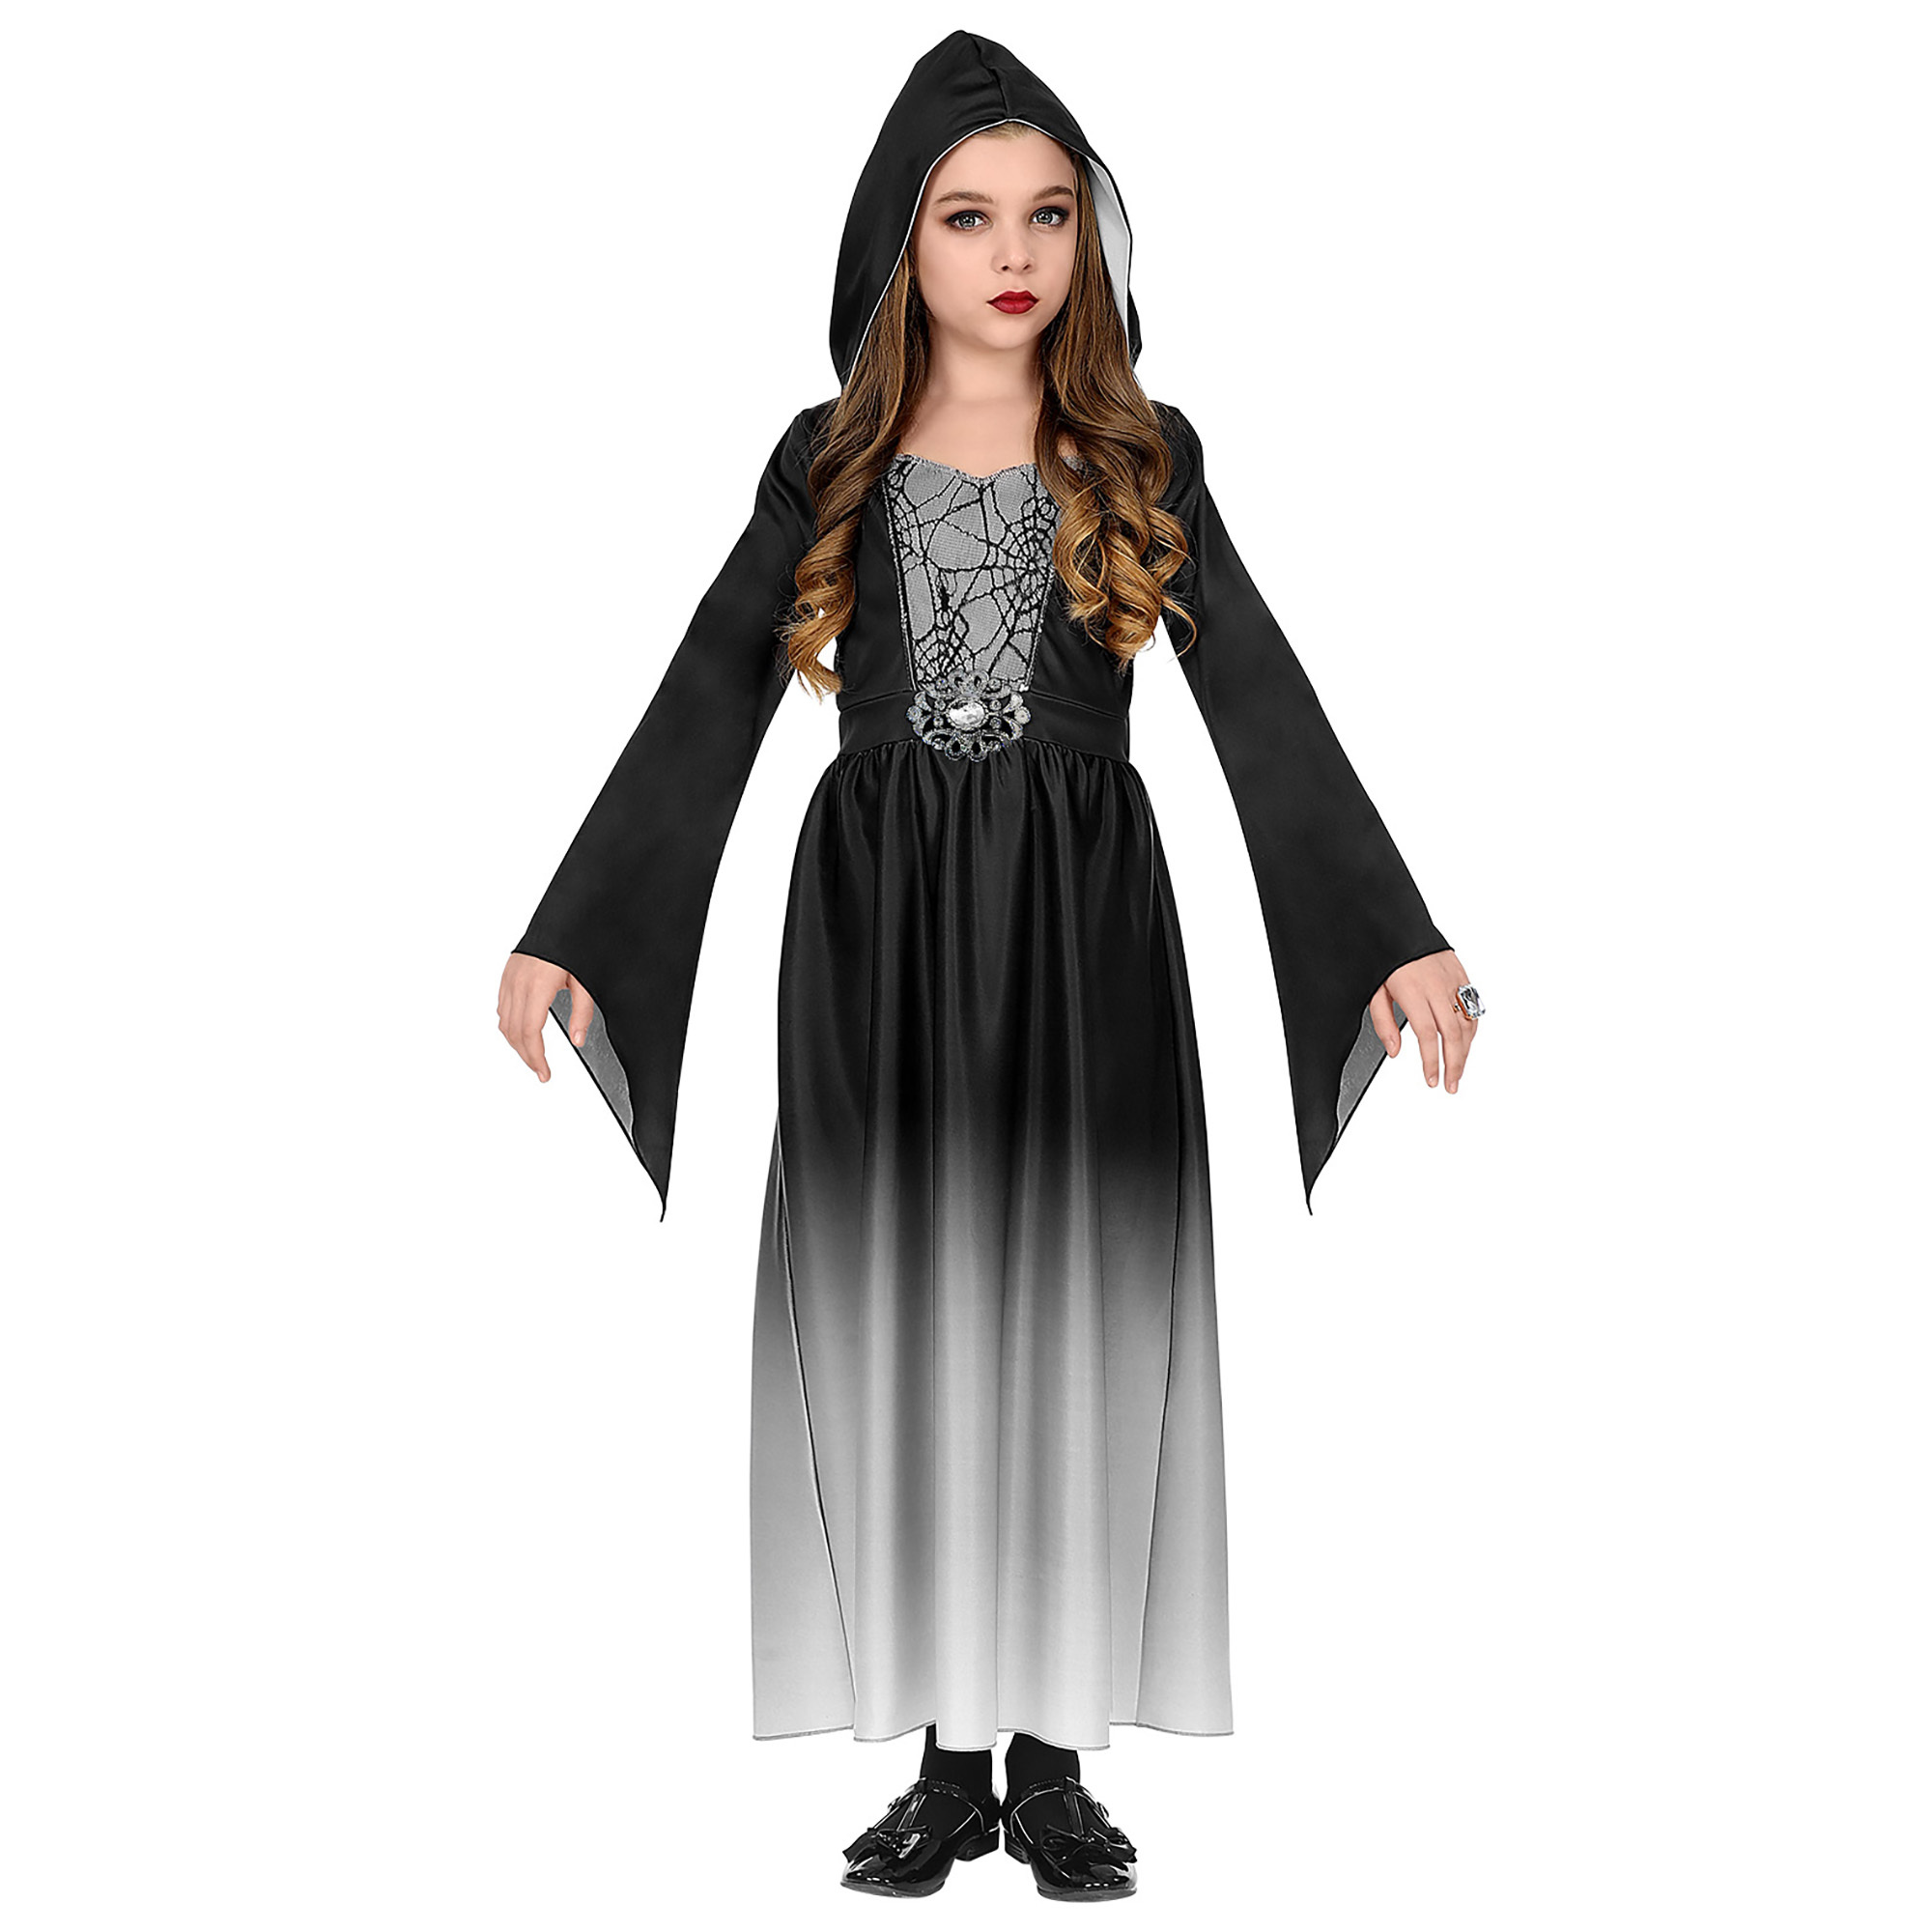 Gothic meisje Nena grijs zwart kostuum meisje